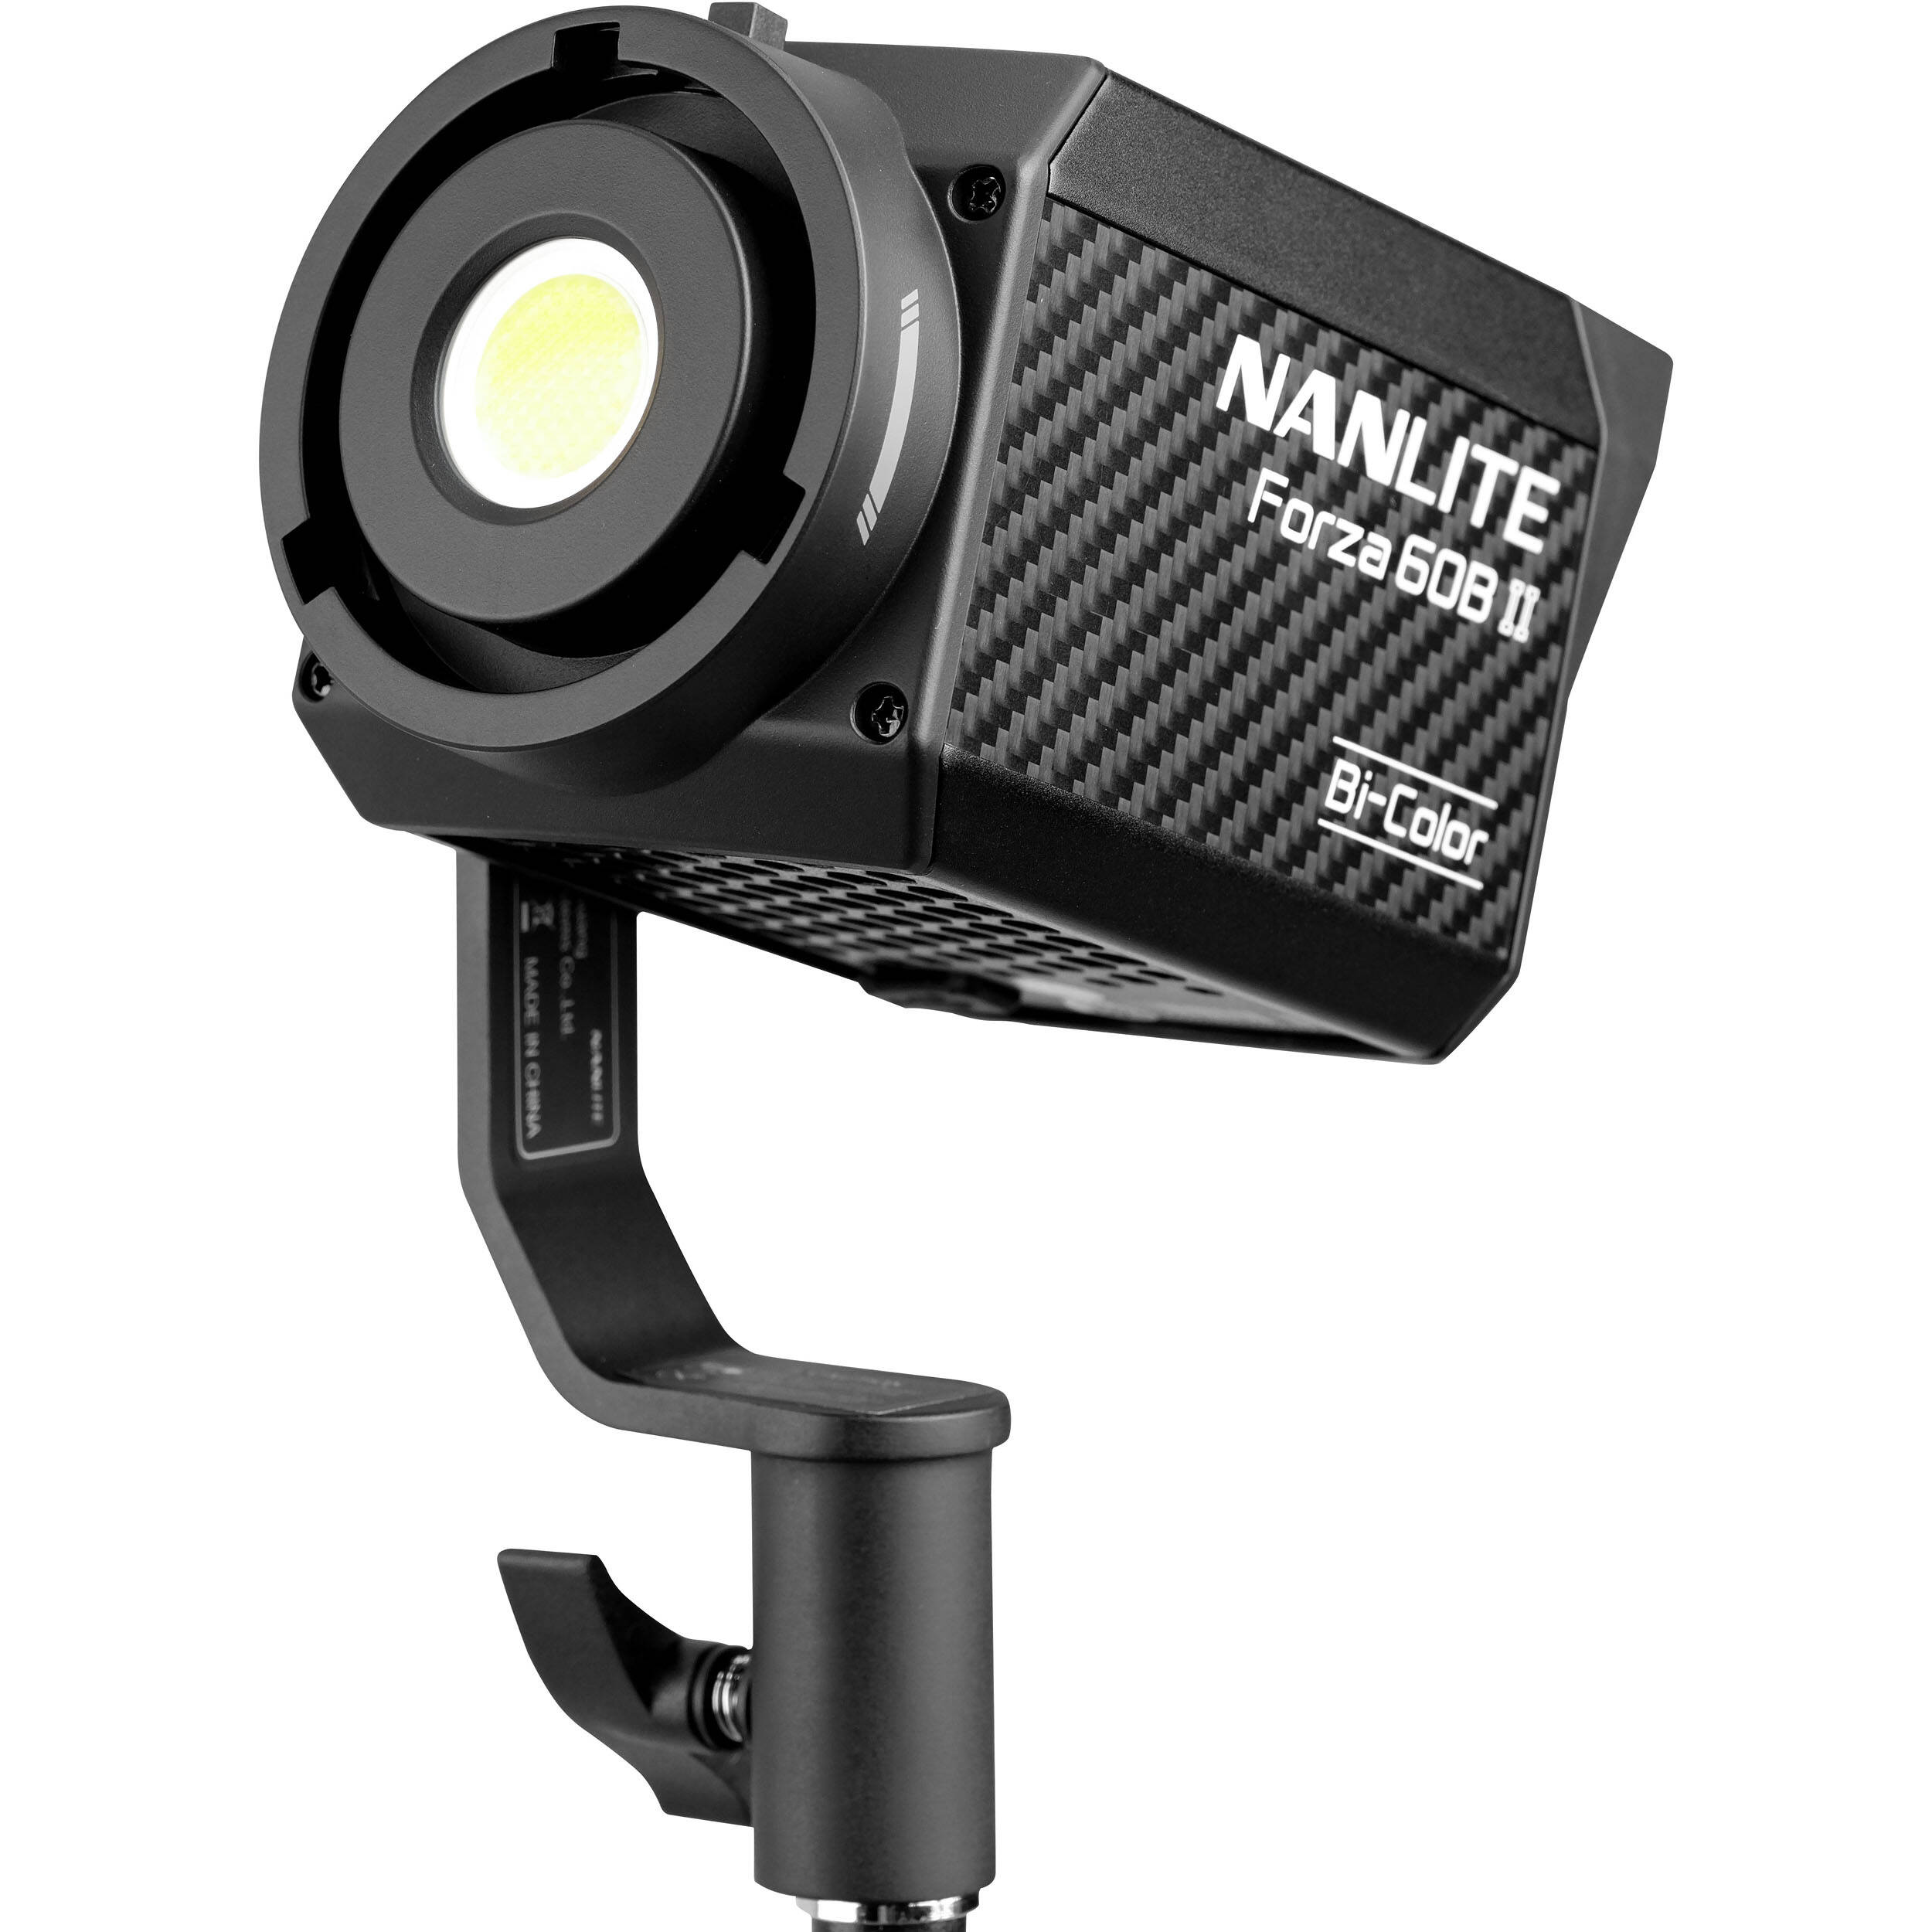 NanLite Forza 60B II Bi-Color Spotlight